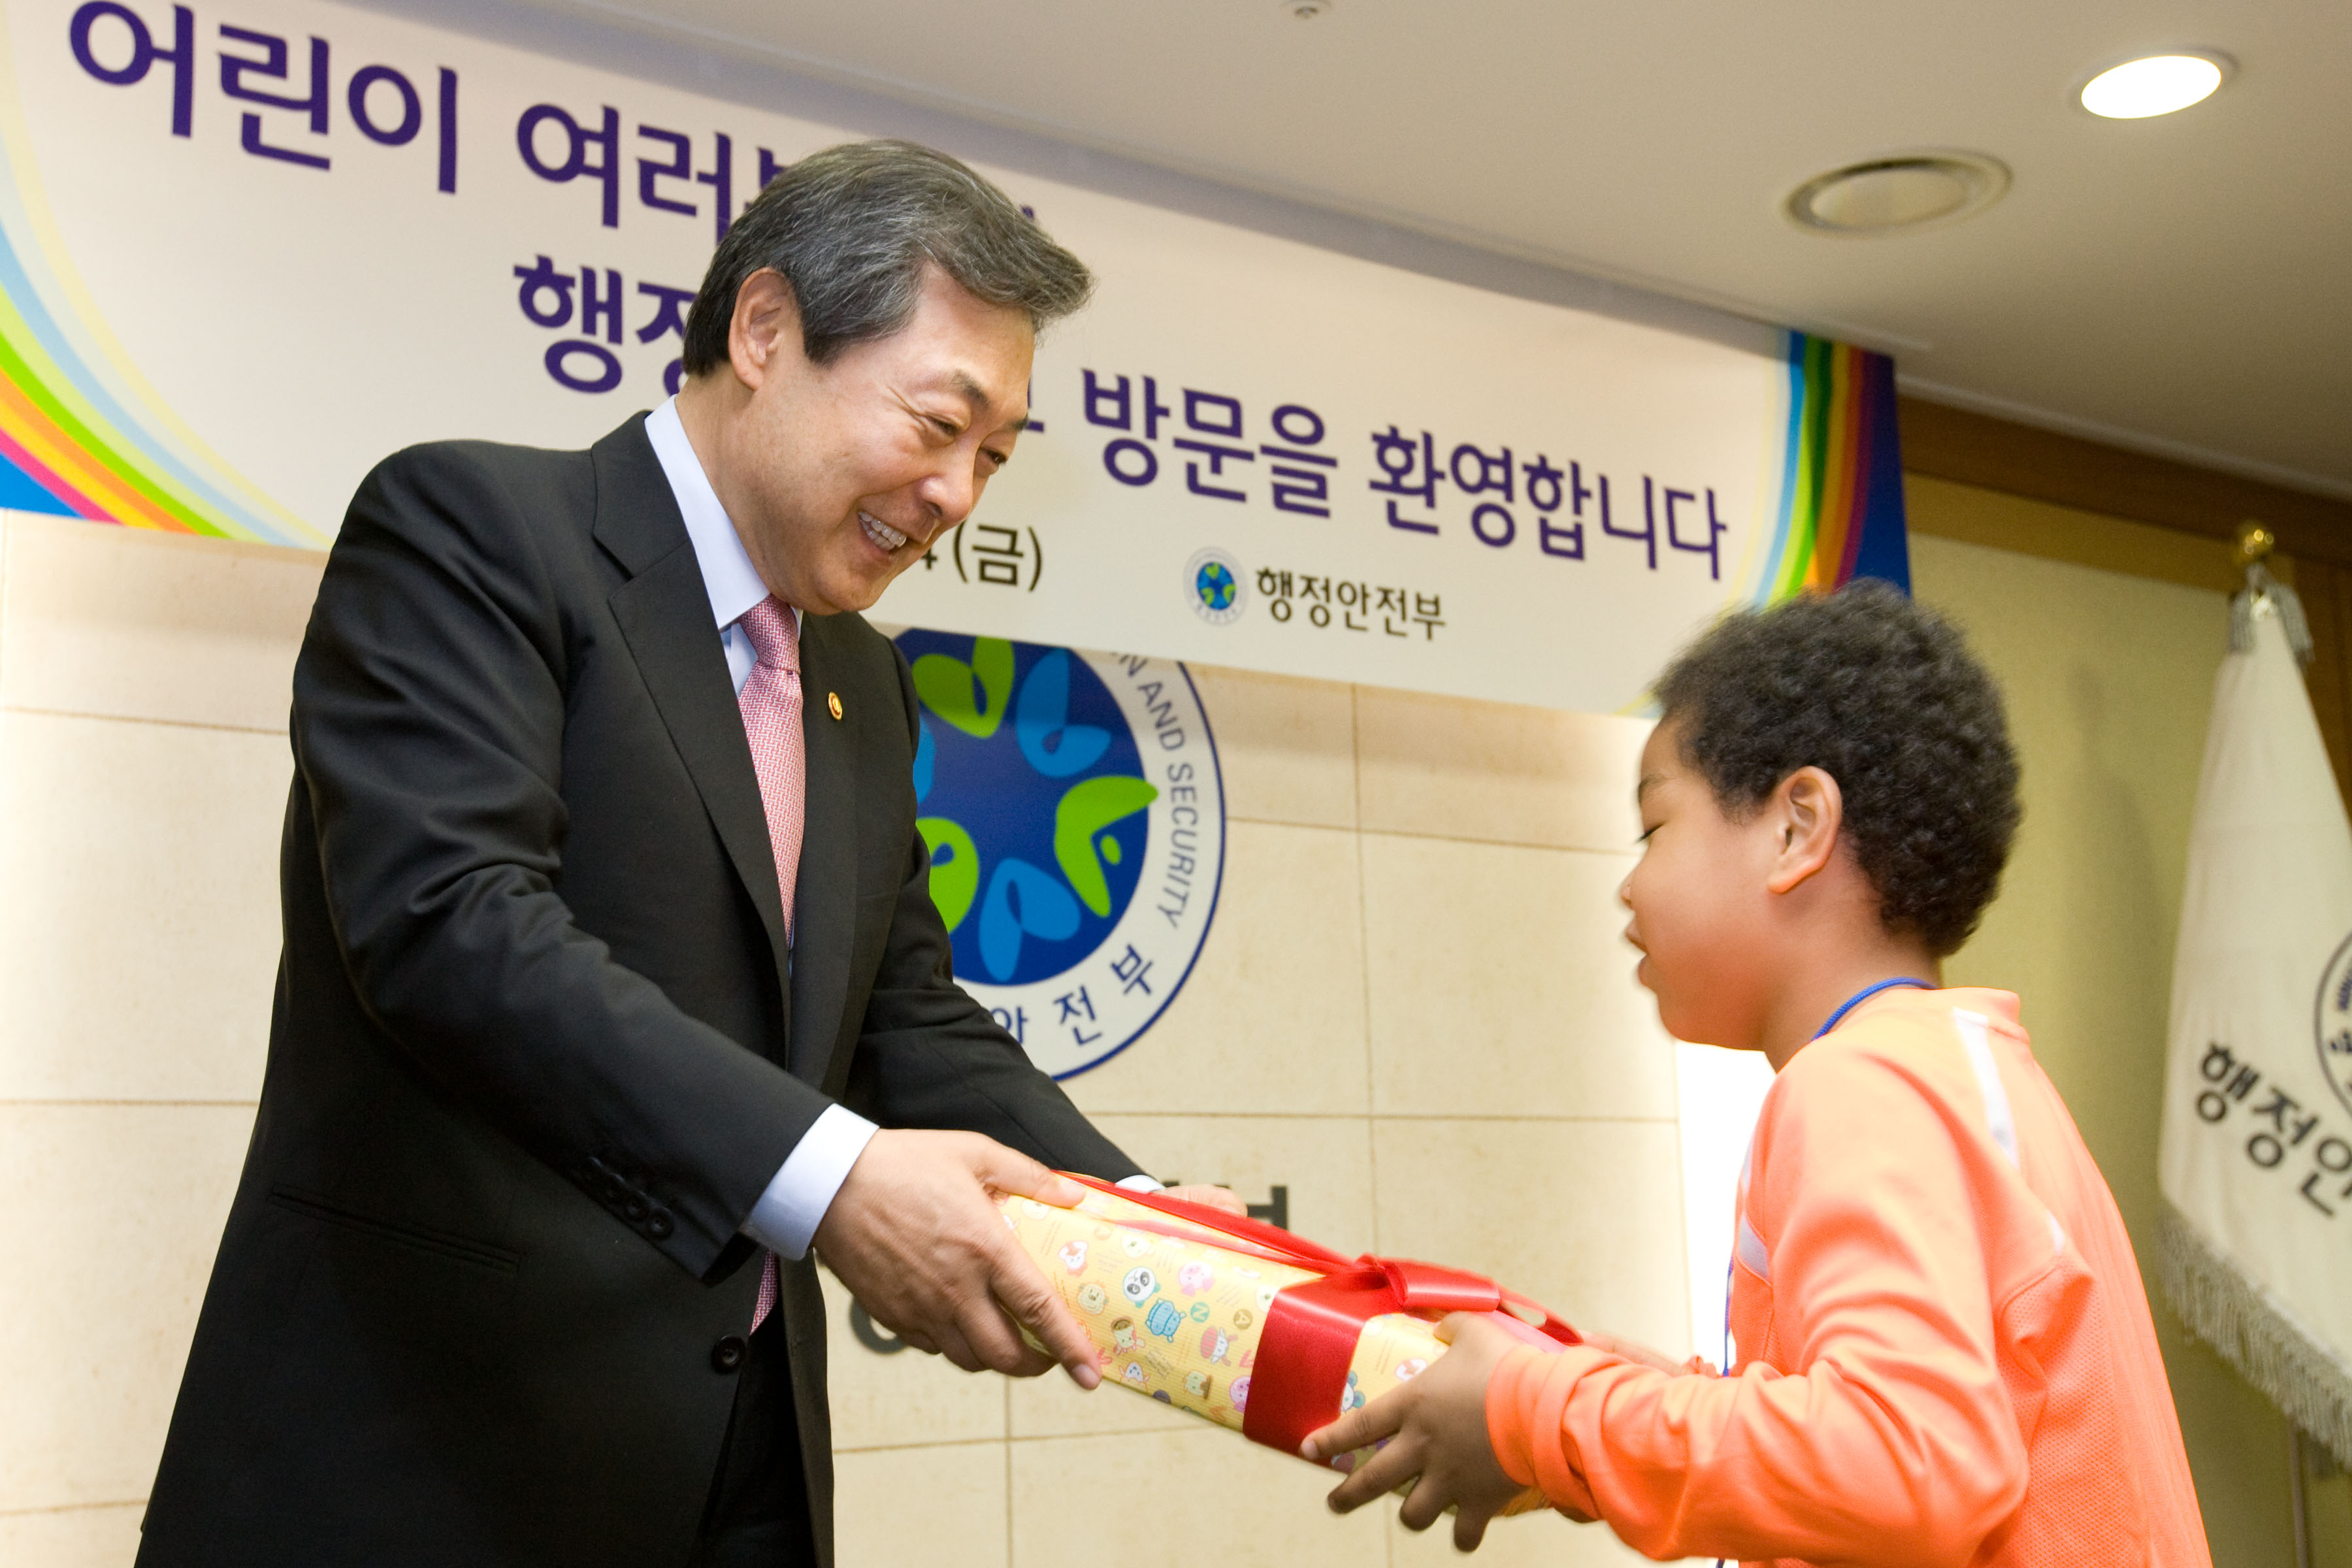 다문화가정 및 북한이탈주민 자녀 초청 행사